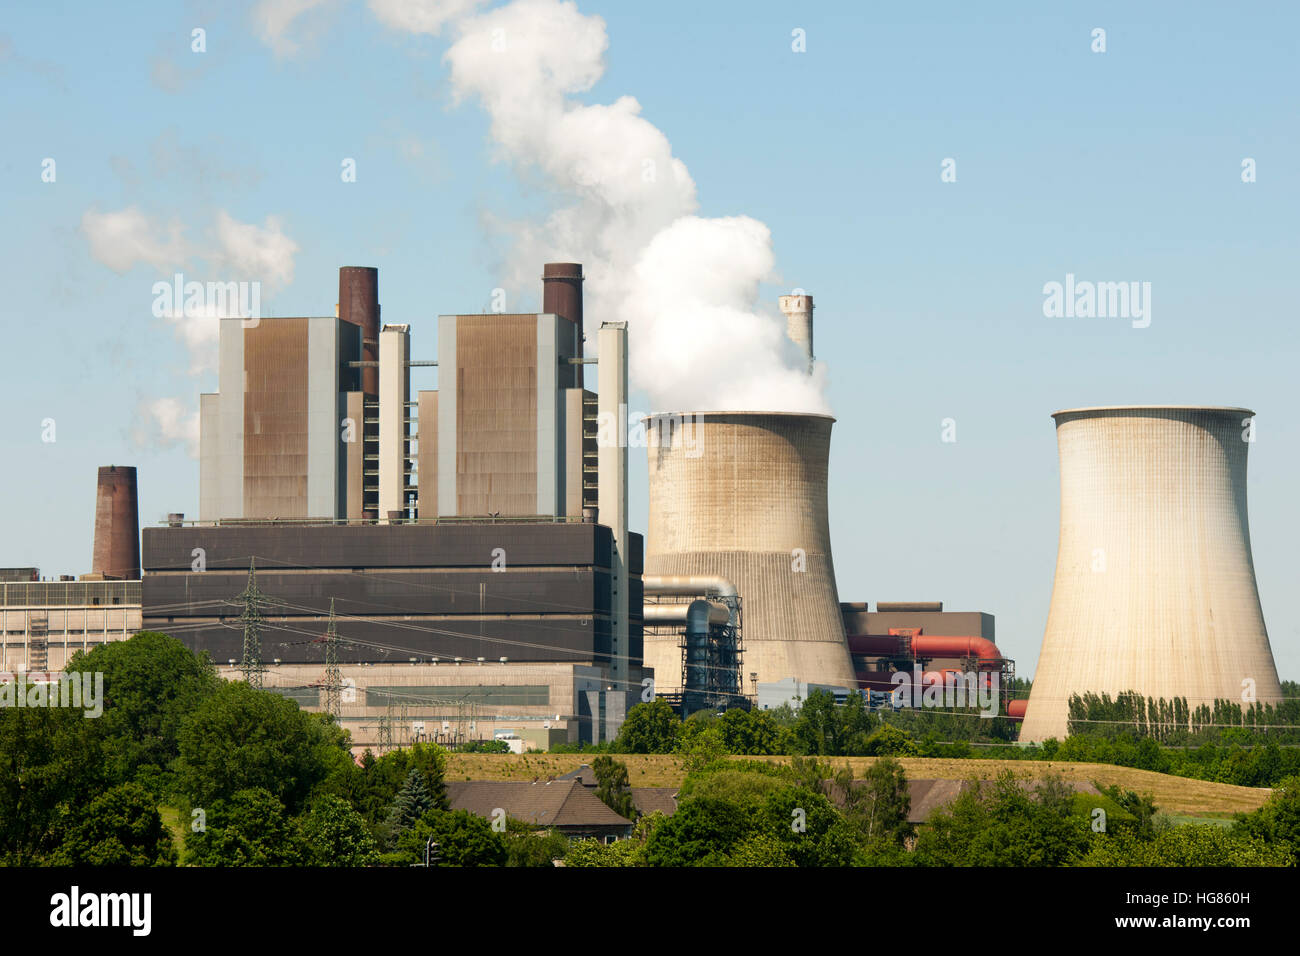 Deutschland, NRW, Städteregion Aachen, Eschweiler, Ortsteil Weisweiler, RWE Braunkohle-Kraftwerk, Stock Photo